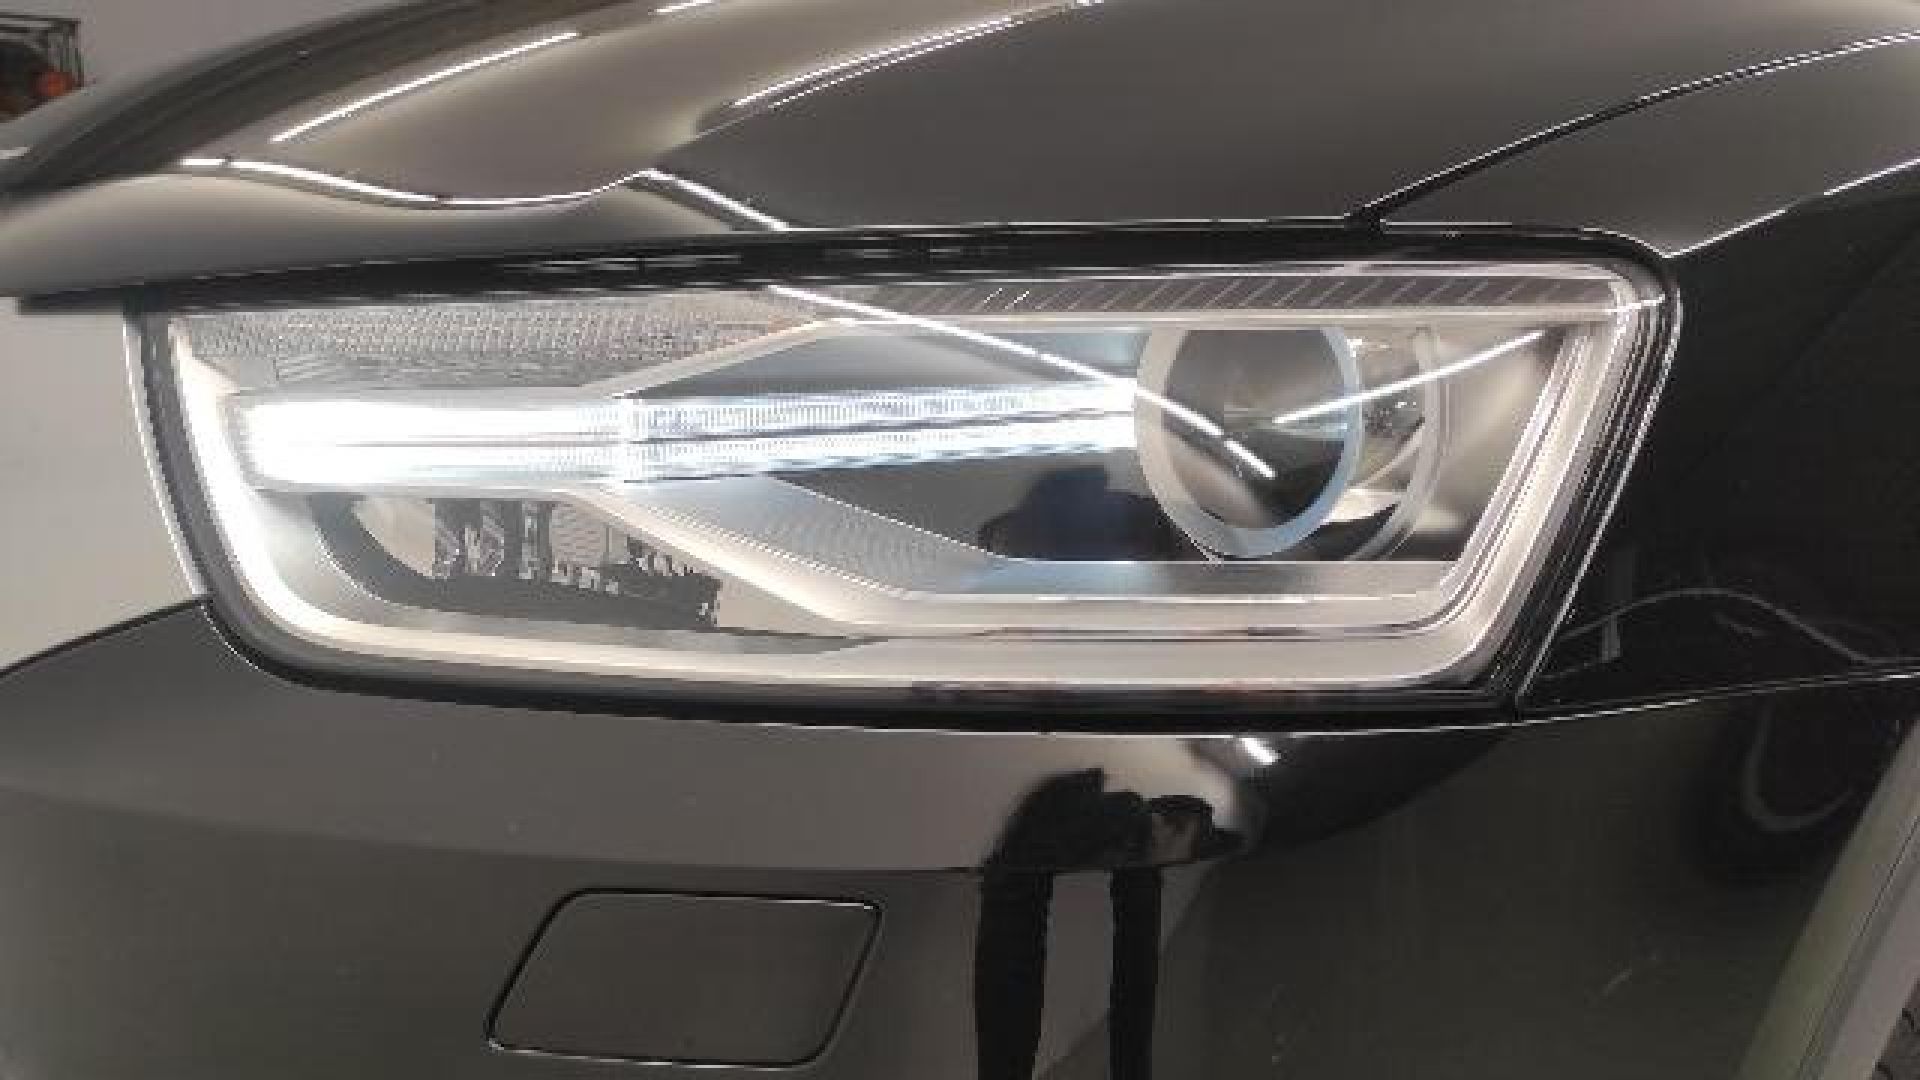 Audi Q3 design edition 2.0 TDI 88 kW (120 CV)